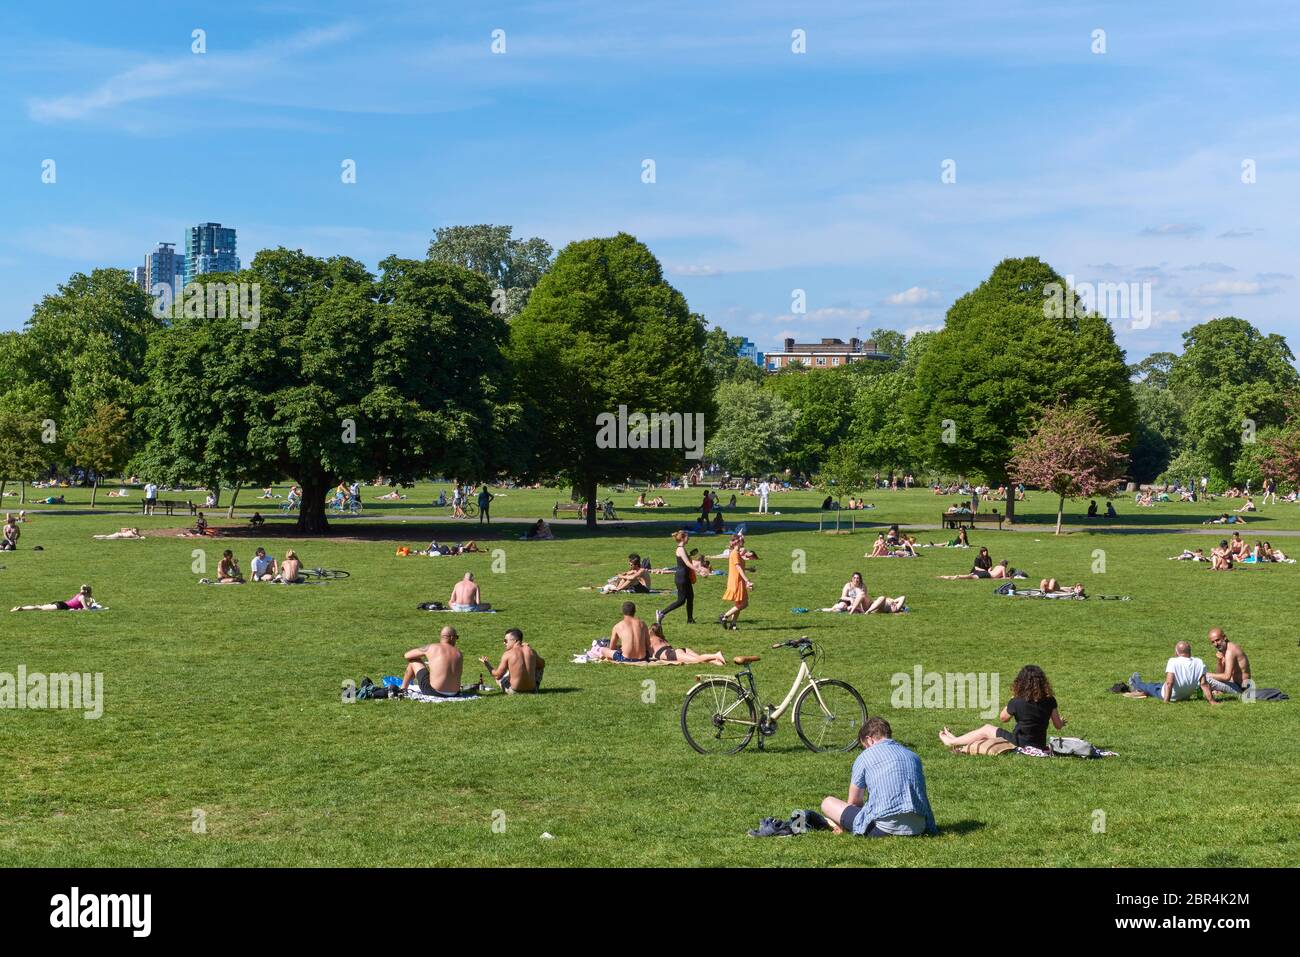 Menschenmengen im Clissalst Park, Stoke Newington, North London, am 20. Mai 2020, am wärmsten Tag des Jahres während der Sperrung Stockfoto